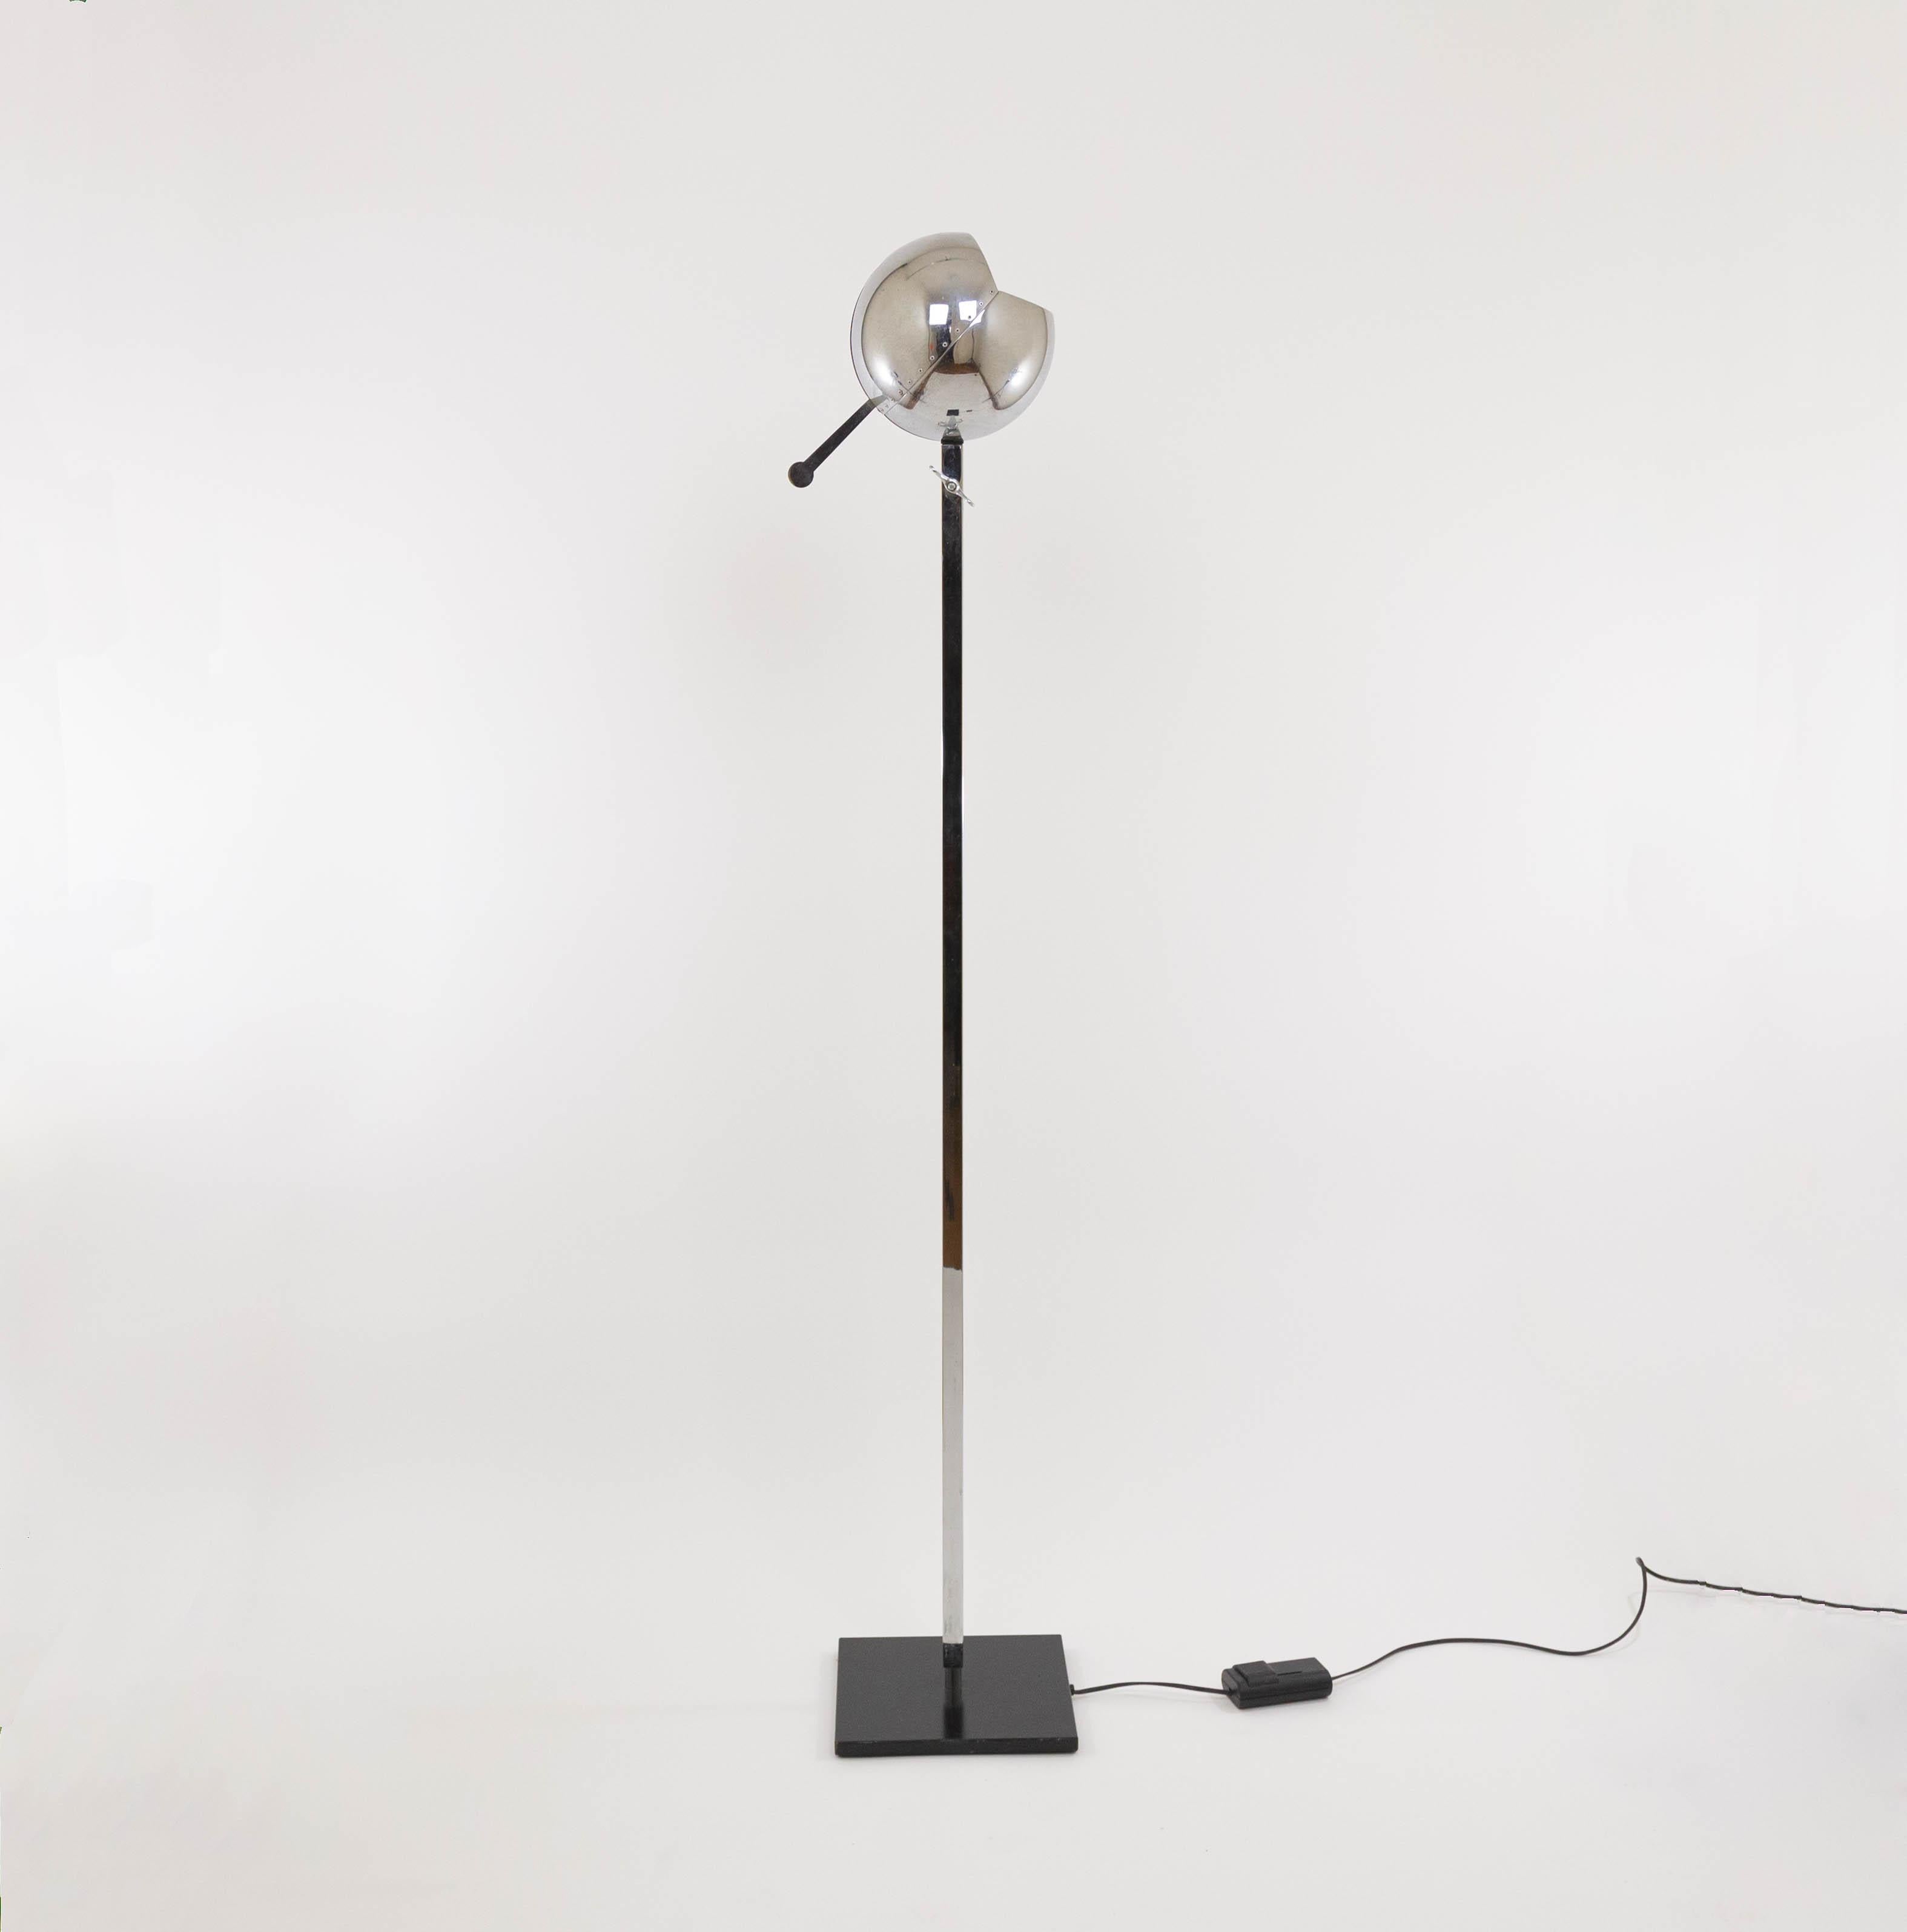 Lampadaire Fire Ball conçu par Carlo Forcolini et fabriqué par Artemide pour Sidecar.

La lampe se compose d'une base métallique carrée et plate et d'une fine tige réglable en hauteur sur laquelle repose l'abat-jour sphérique chromé orné de rivets